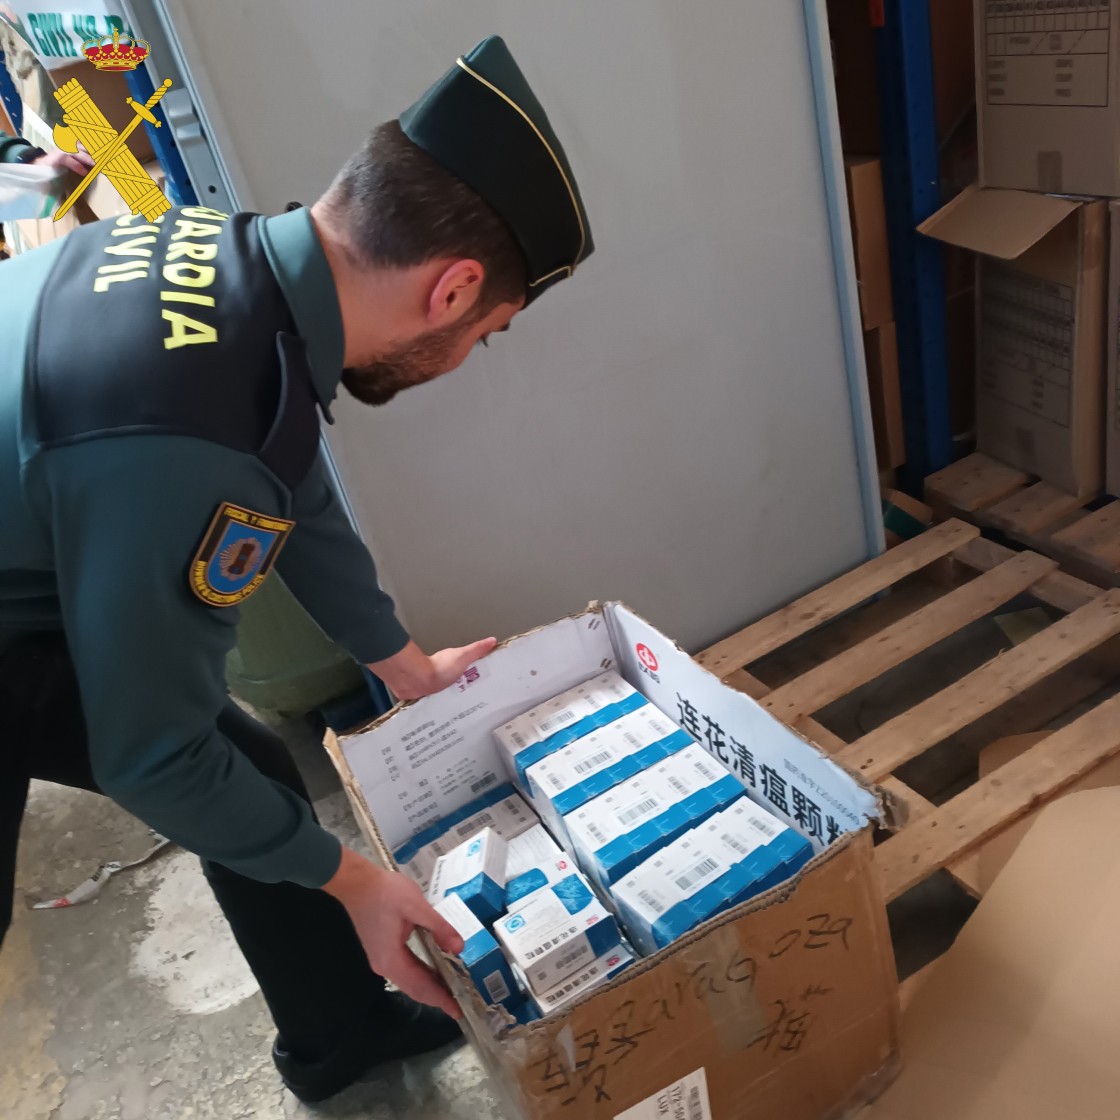 La Guardia Civil de Teruel incauta armas blancas, bengalas, medicamentos y artículos infantiles fuera de normativa en una nave de Zaragoza